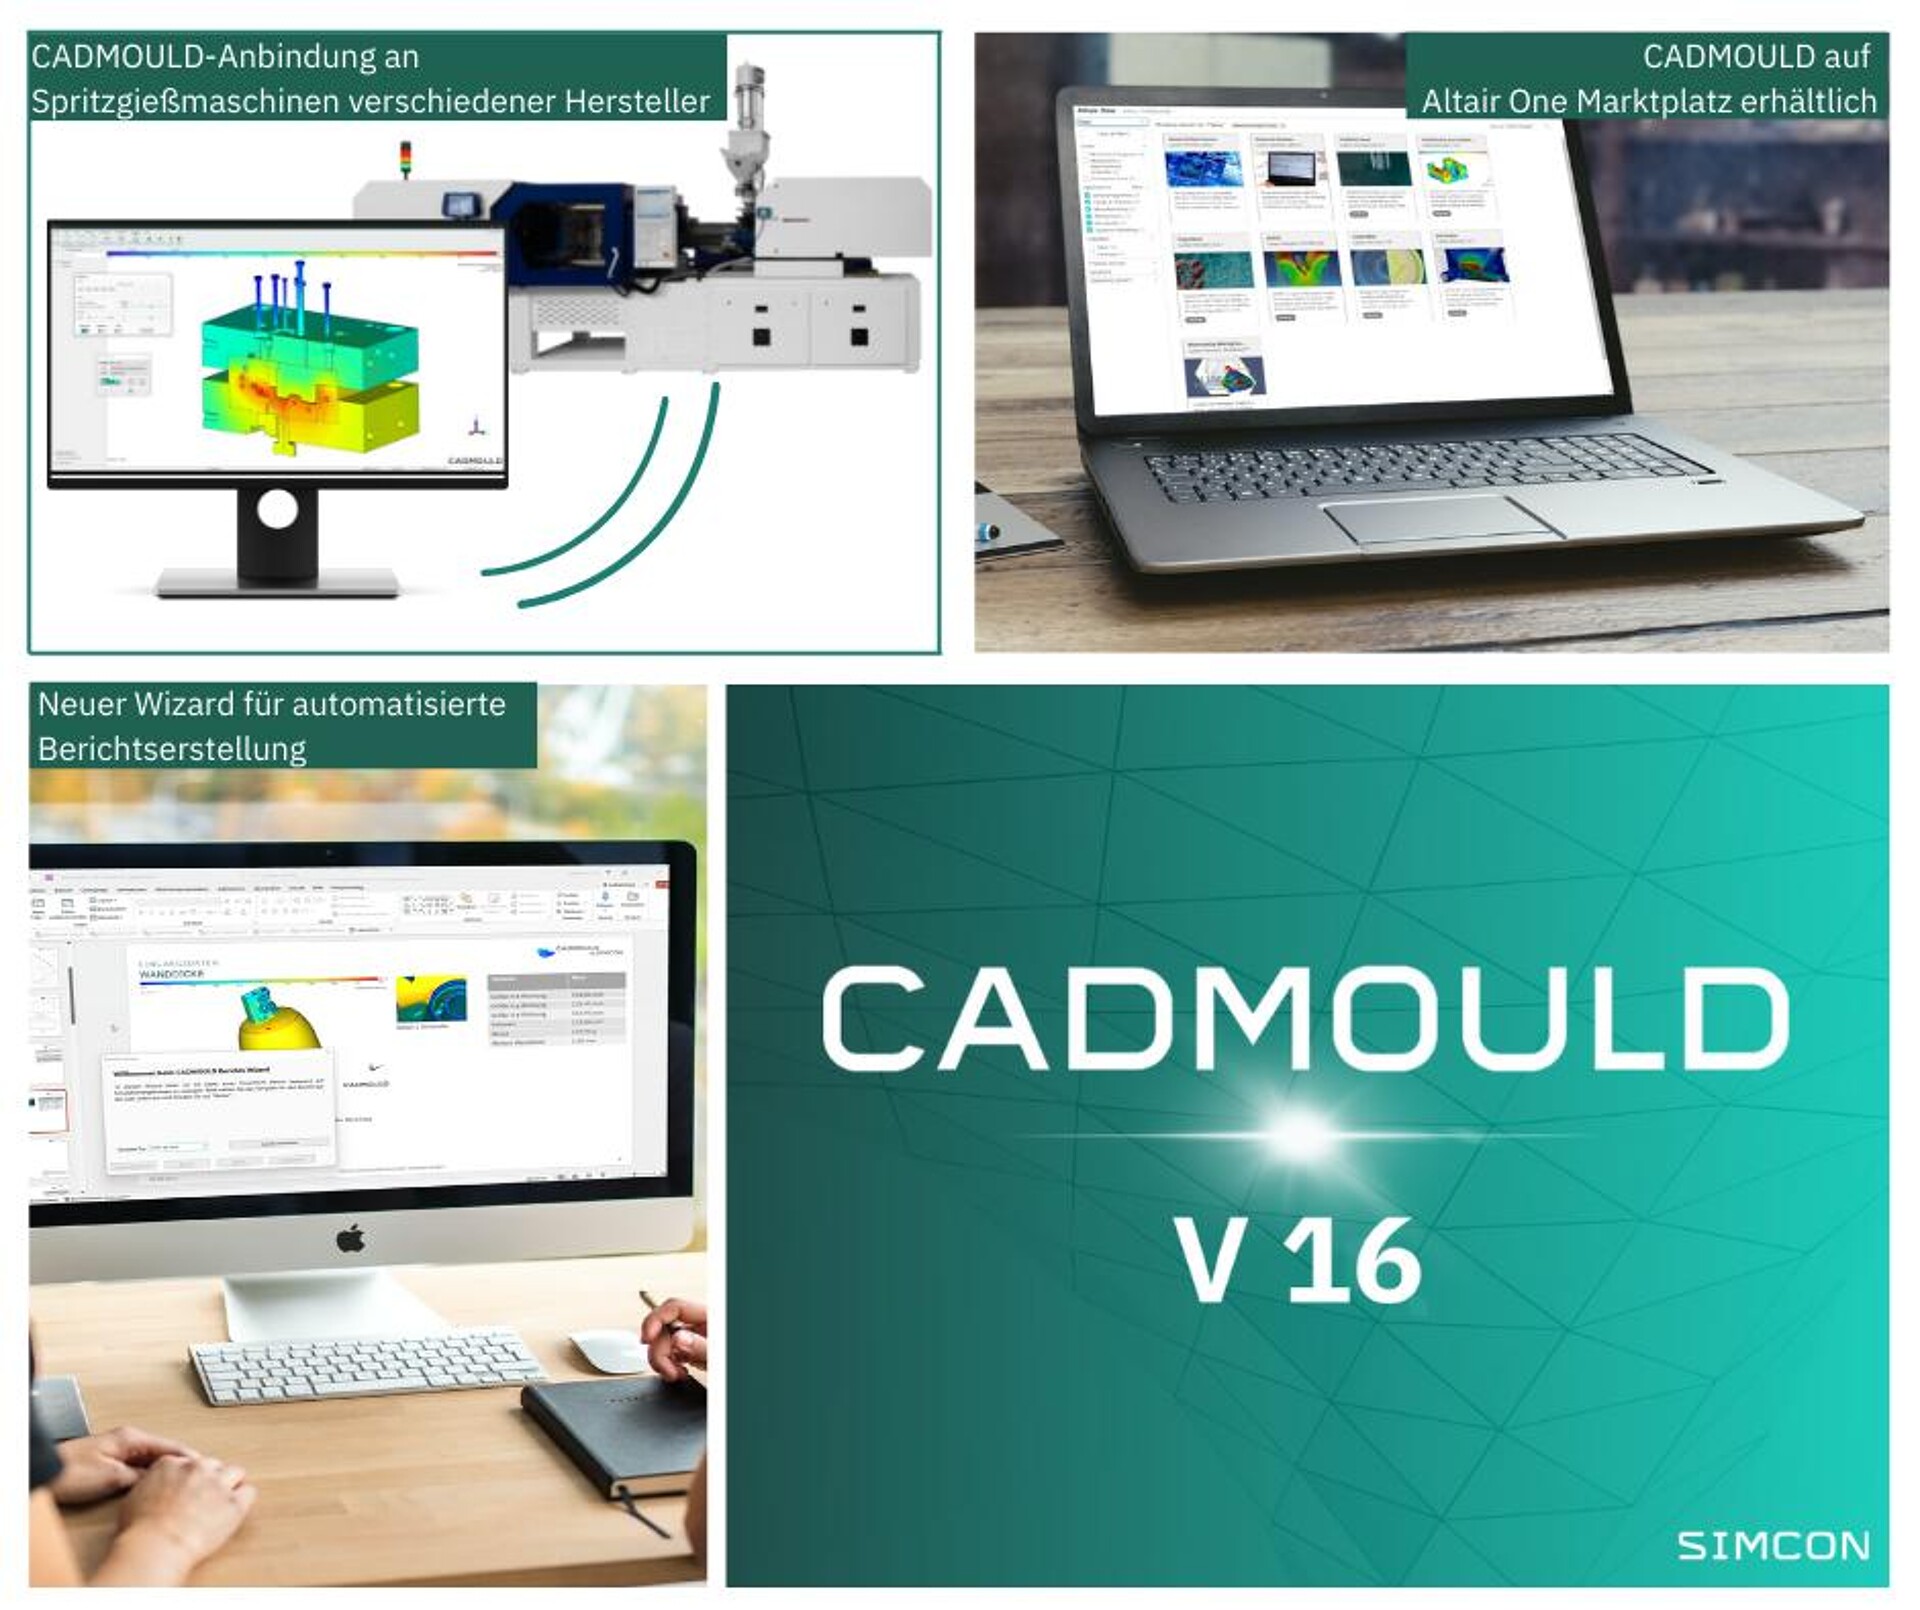 Die Version 16.0 von Cadmould verfügt über zahlreiche neue Feature und ist auf dem Marktplatz von Altair erhältlich. (Foto: Simcon)